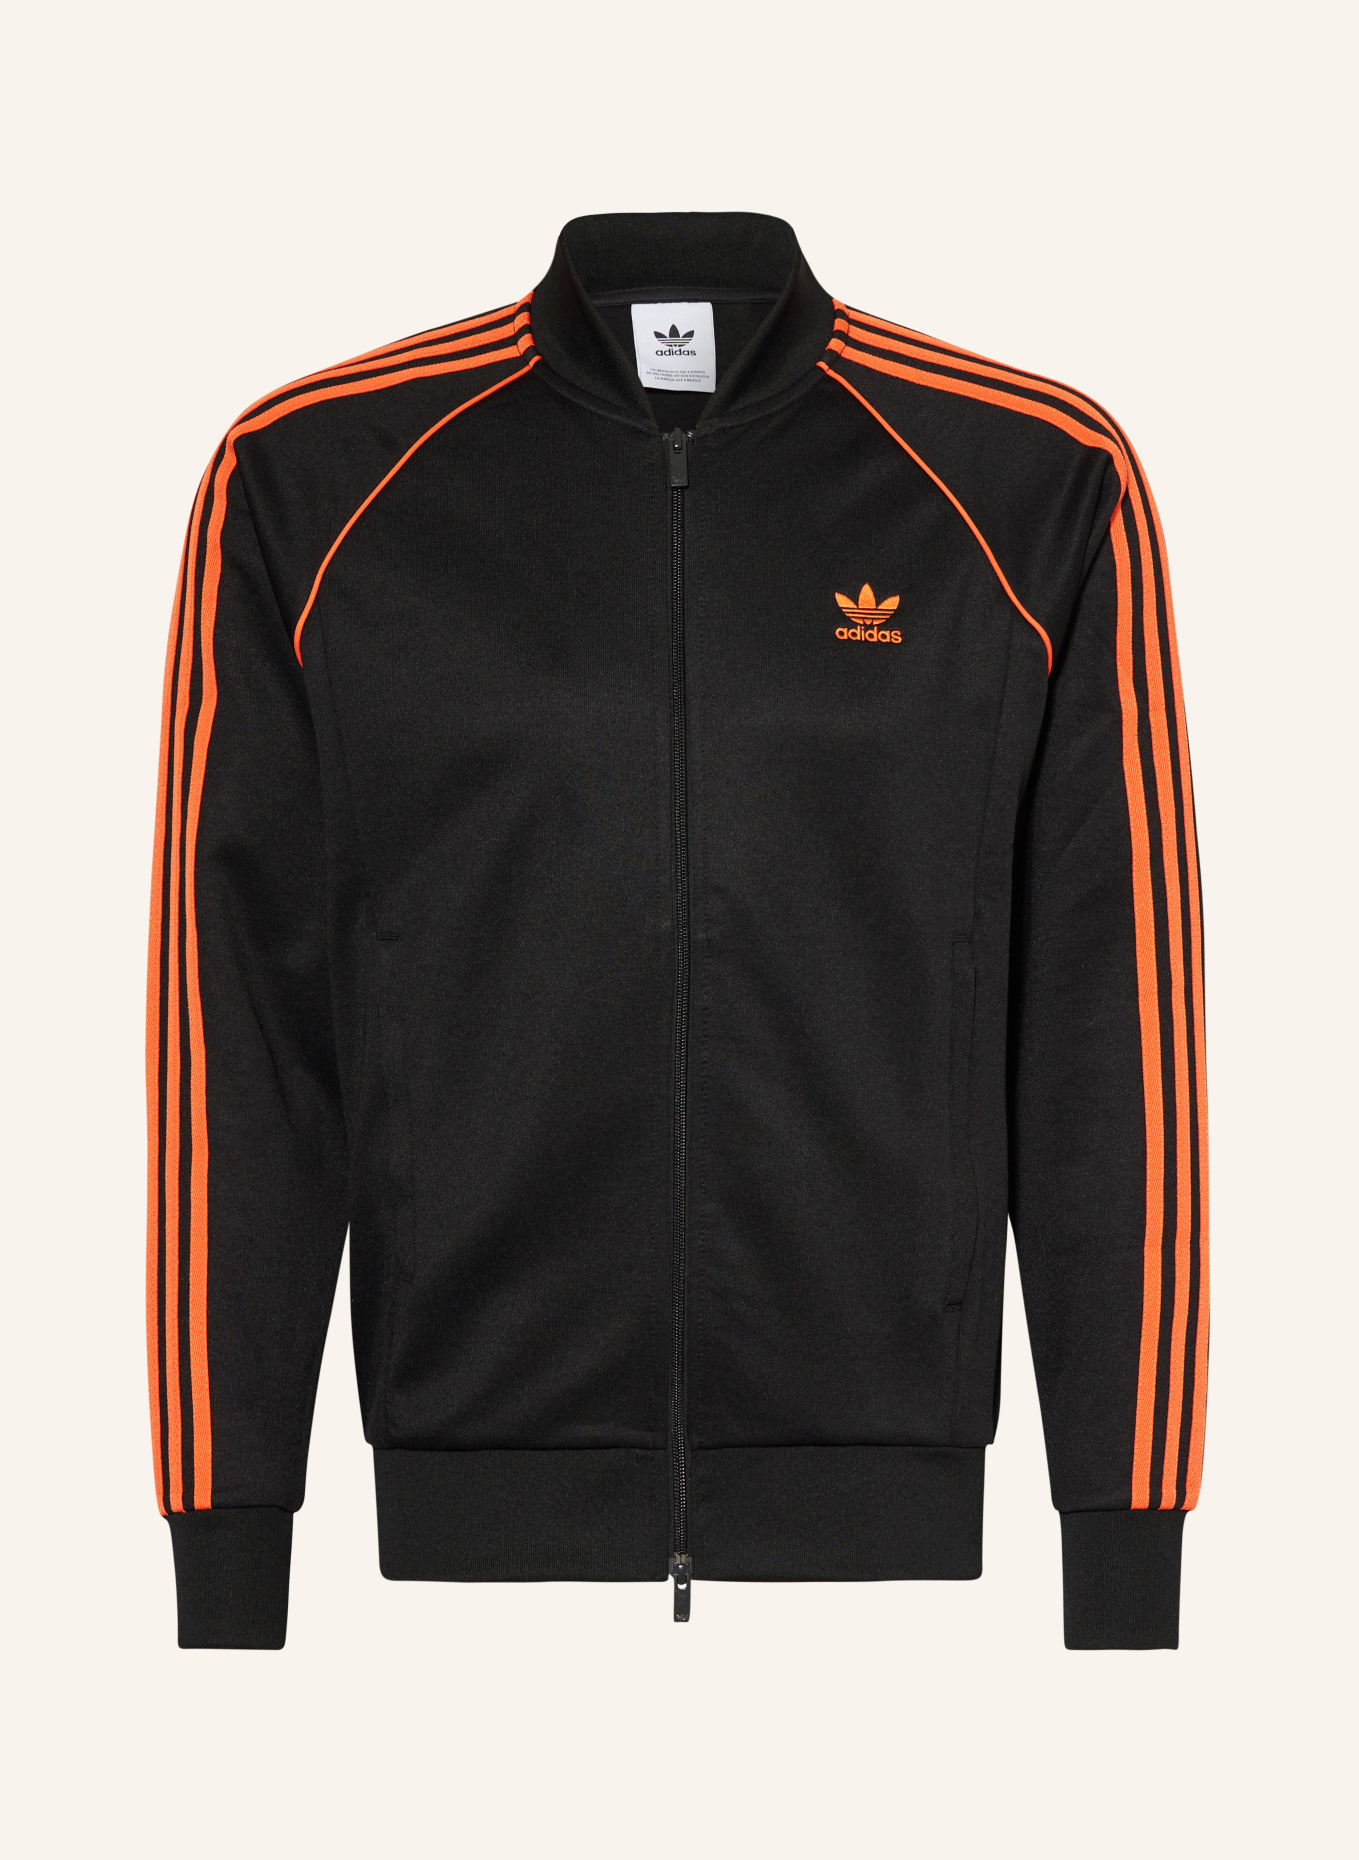 SST orange in Originals adidas CLASSICS schwarz/ ADICOLOR Trainingsjacke